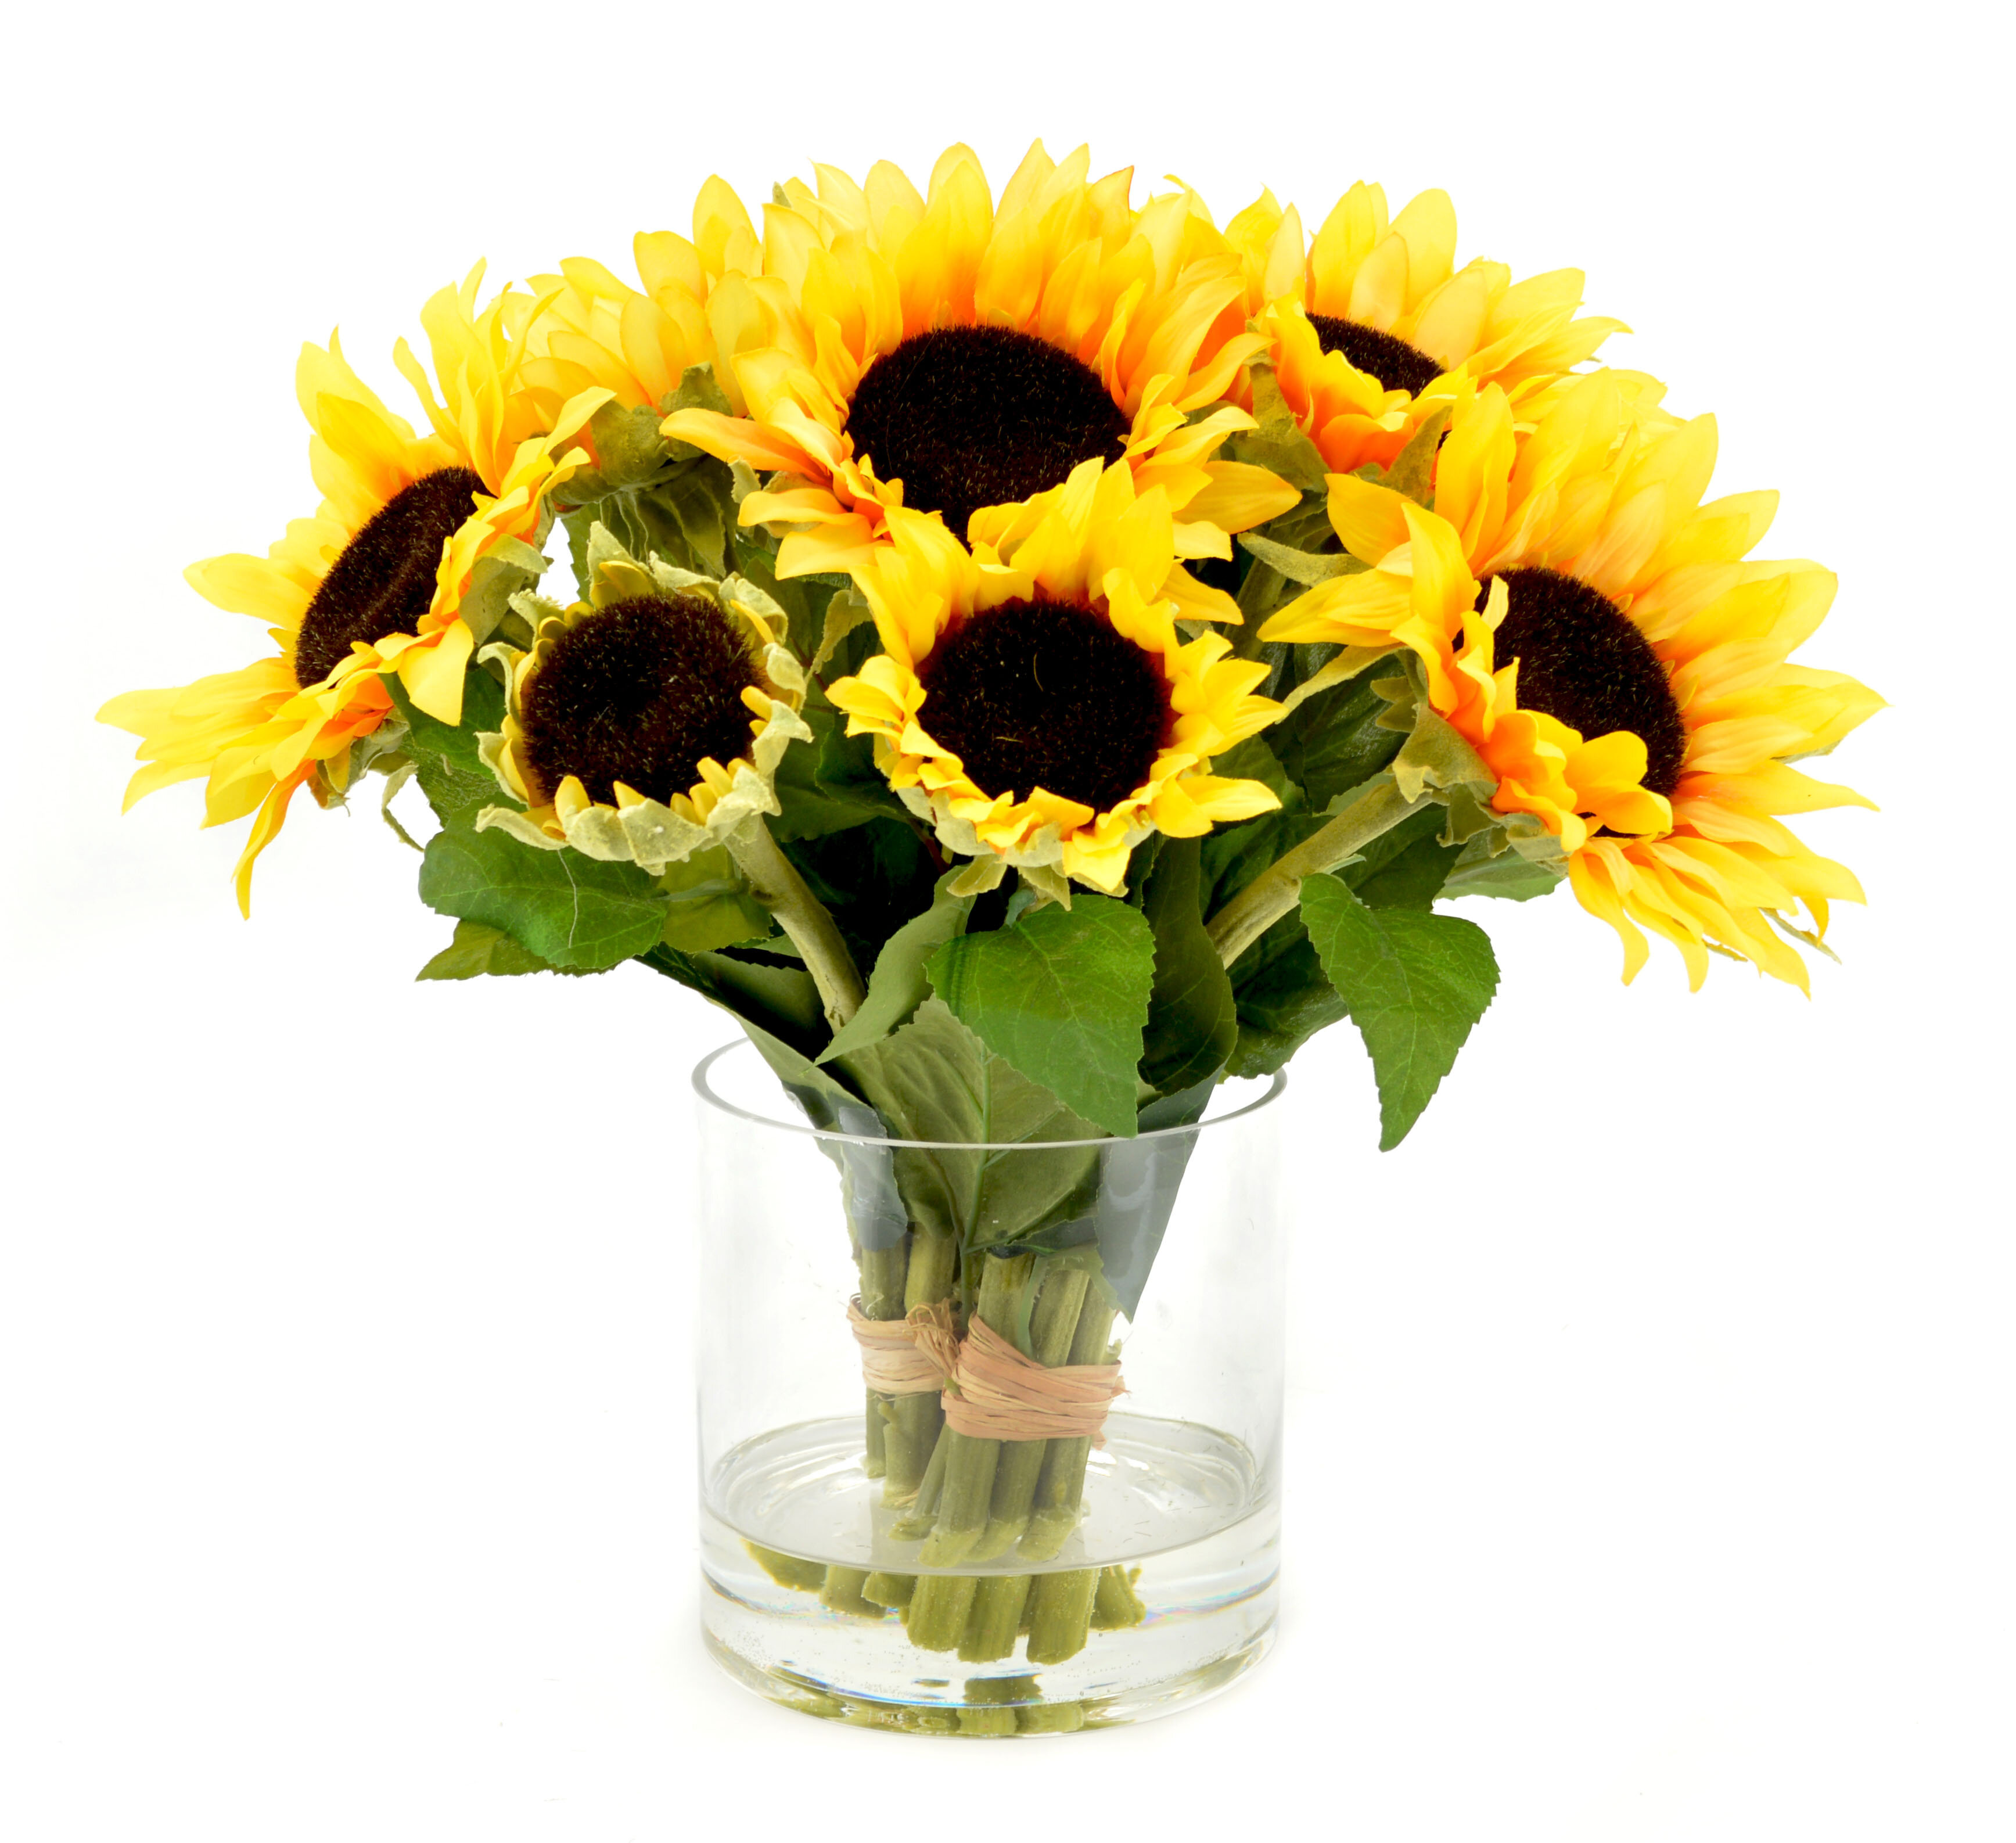 August Grove Faux Sunflower Floral Arrangements In Vase Reviews Wayfair